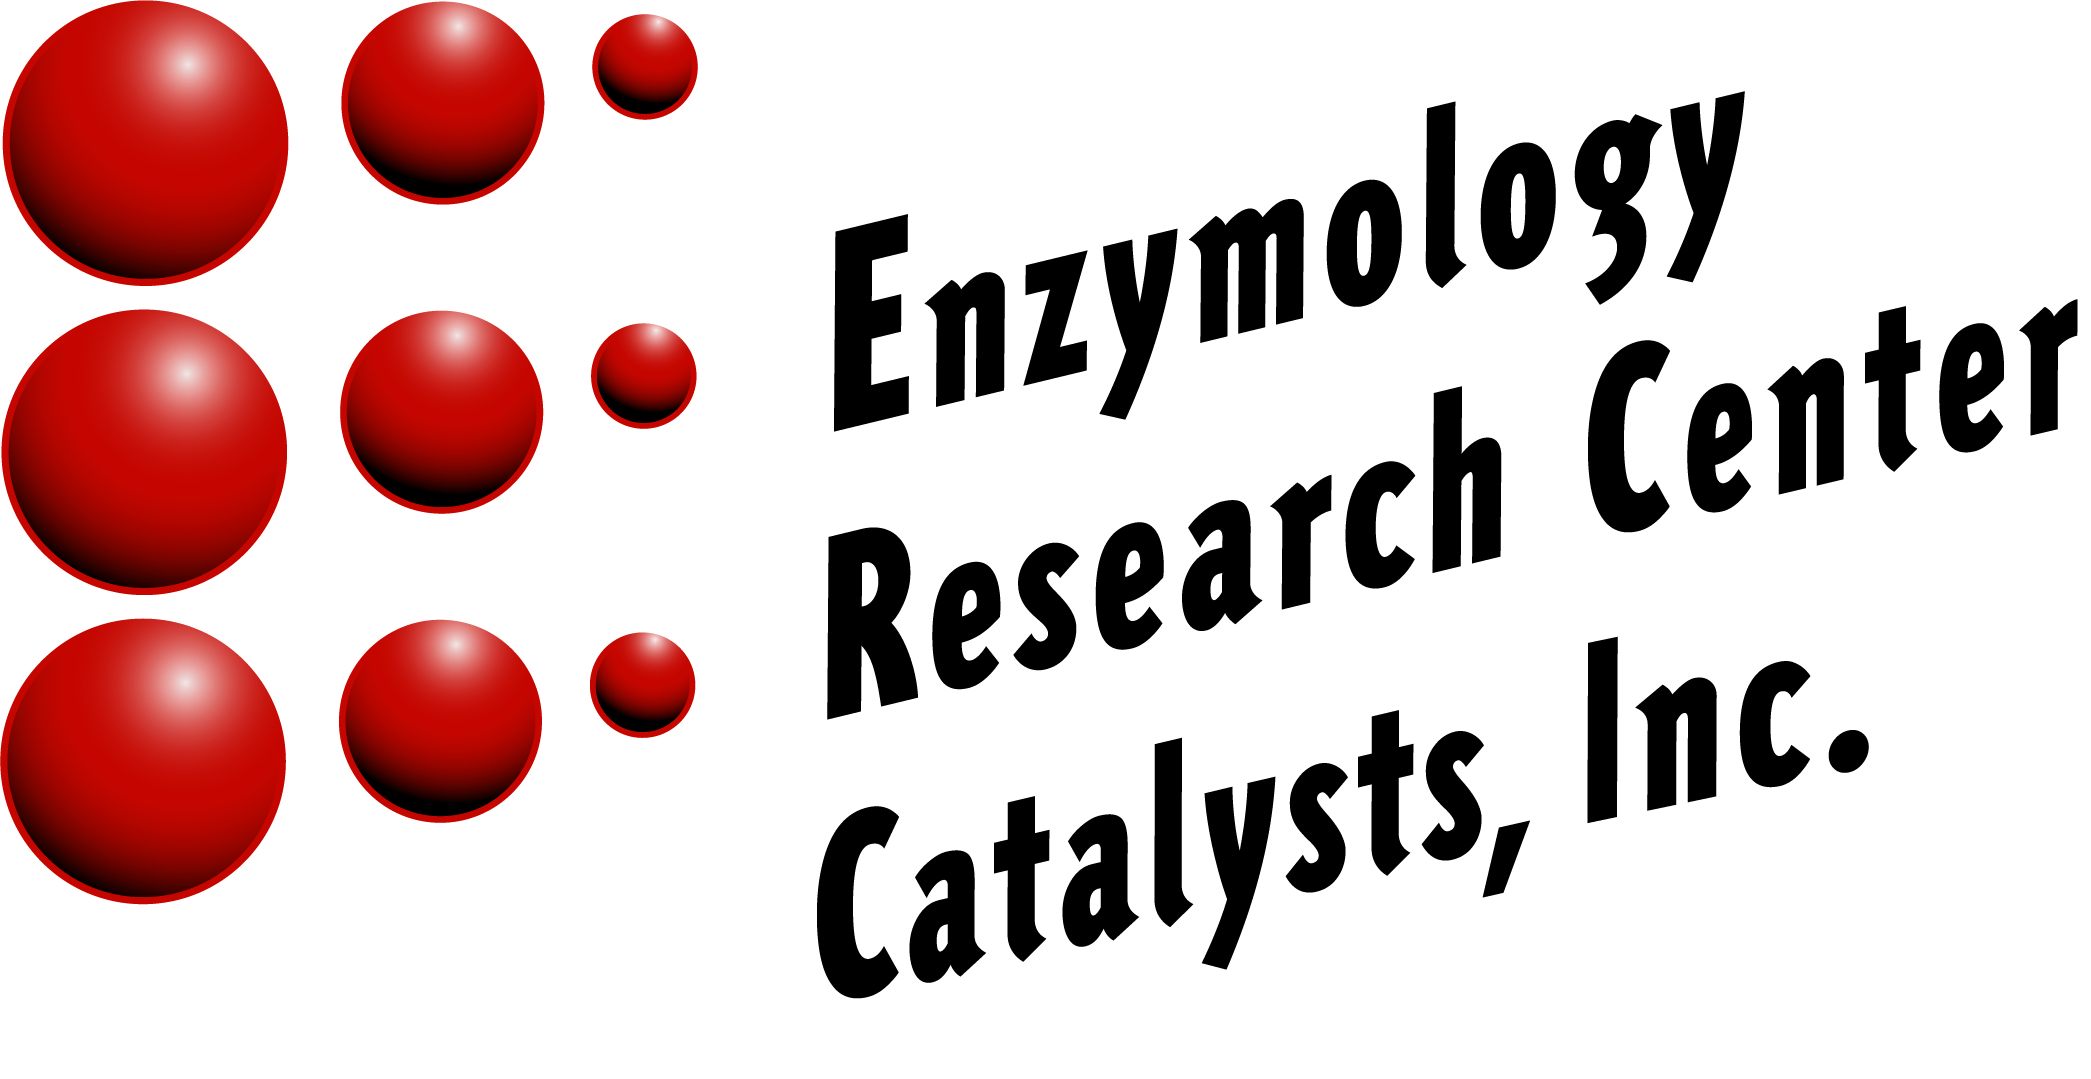 Enzymology Reseach Center Catalysts